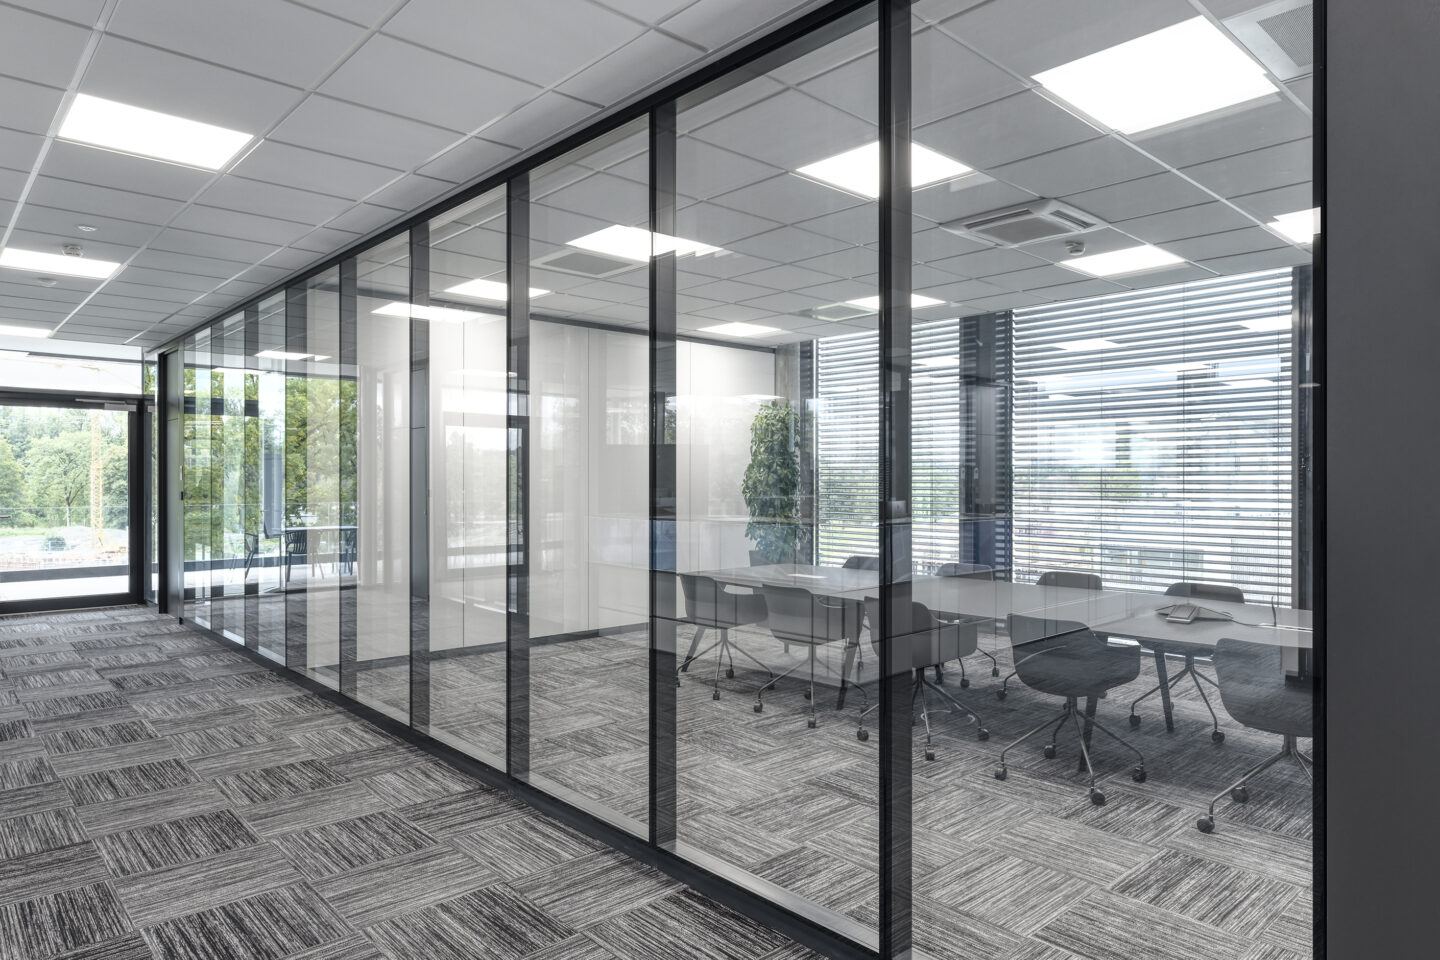 In Besprechungsräumen und in den Büros der Geschäftsleitung erfüllt die Strucural-Glazing-Verglasung fecostruct mit Rw,P = 47 dB noch höhere Schalldämmanforderungen